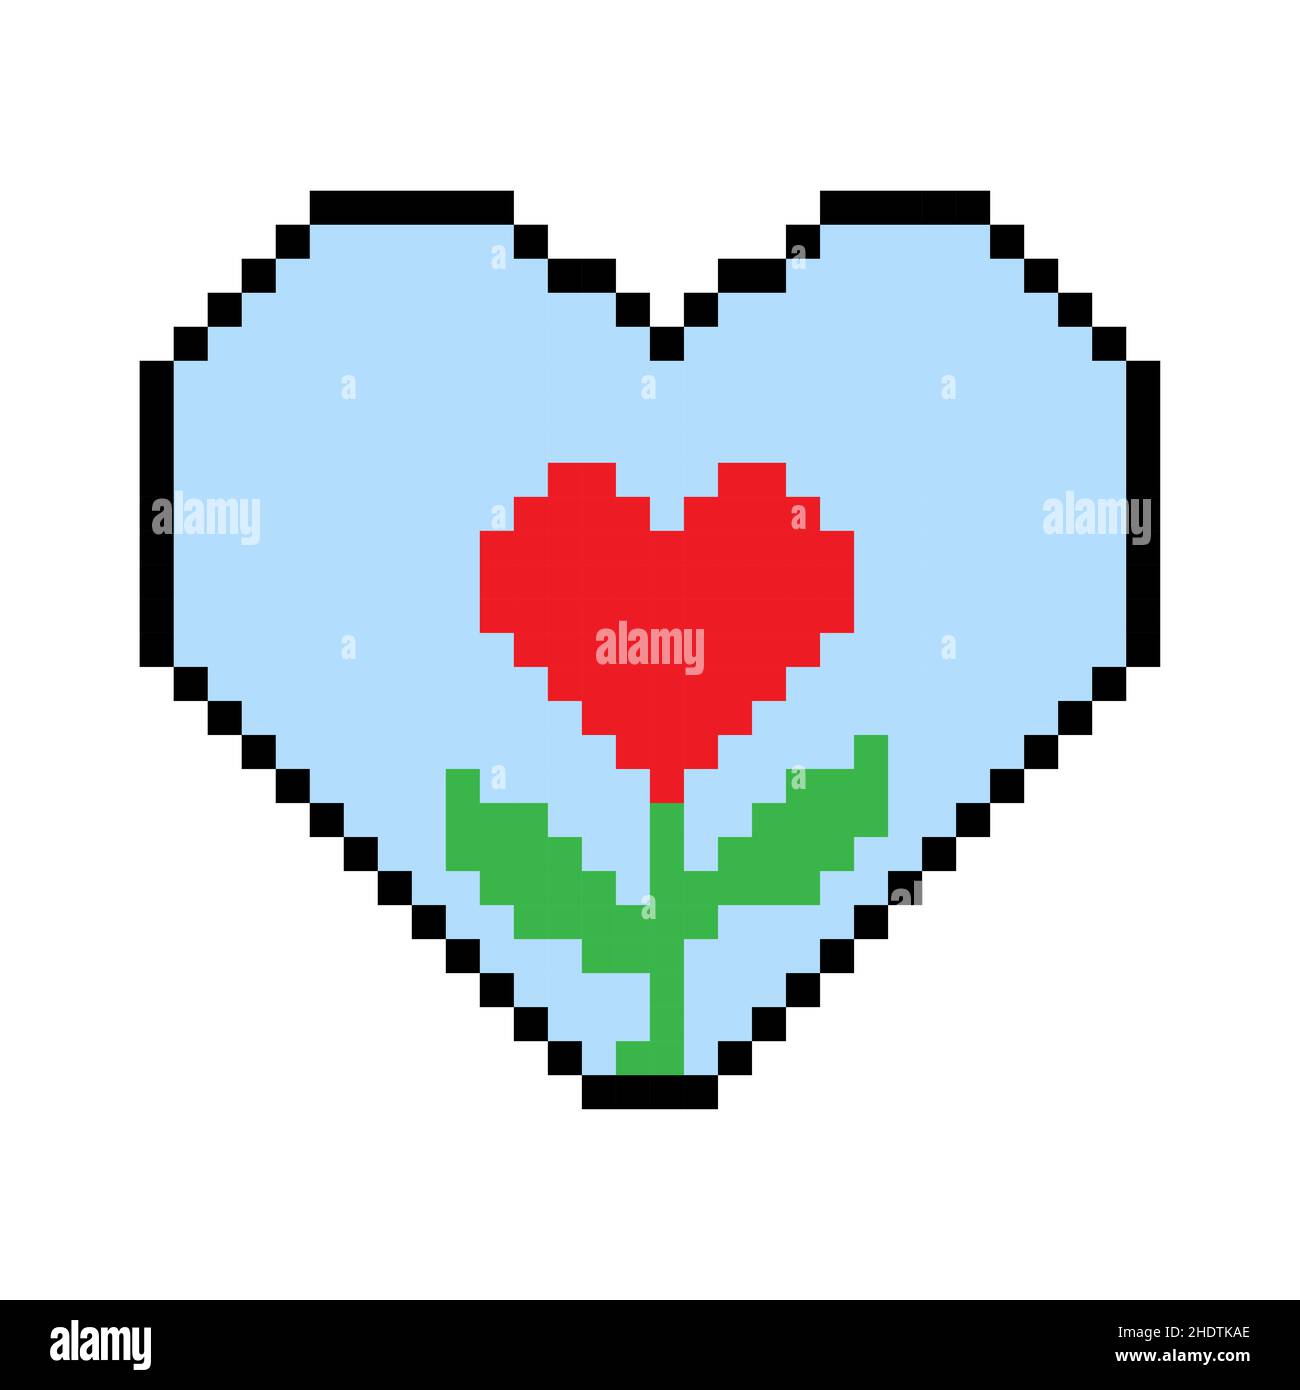 Ilustración artística de Heart Pixel. Amor pixel art, clip art o imagen  Fotografía de stock - Alamy